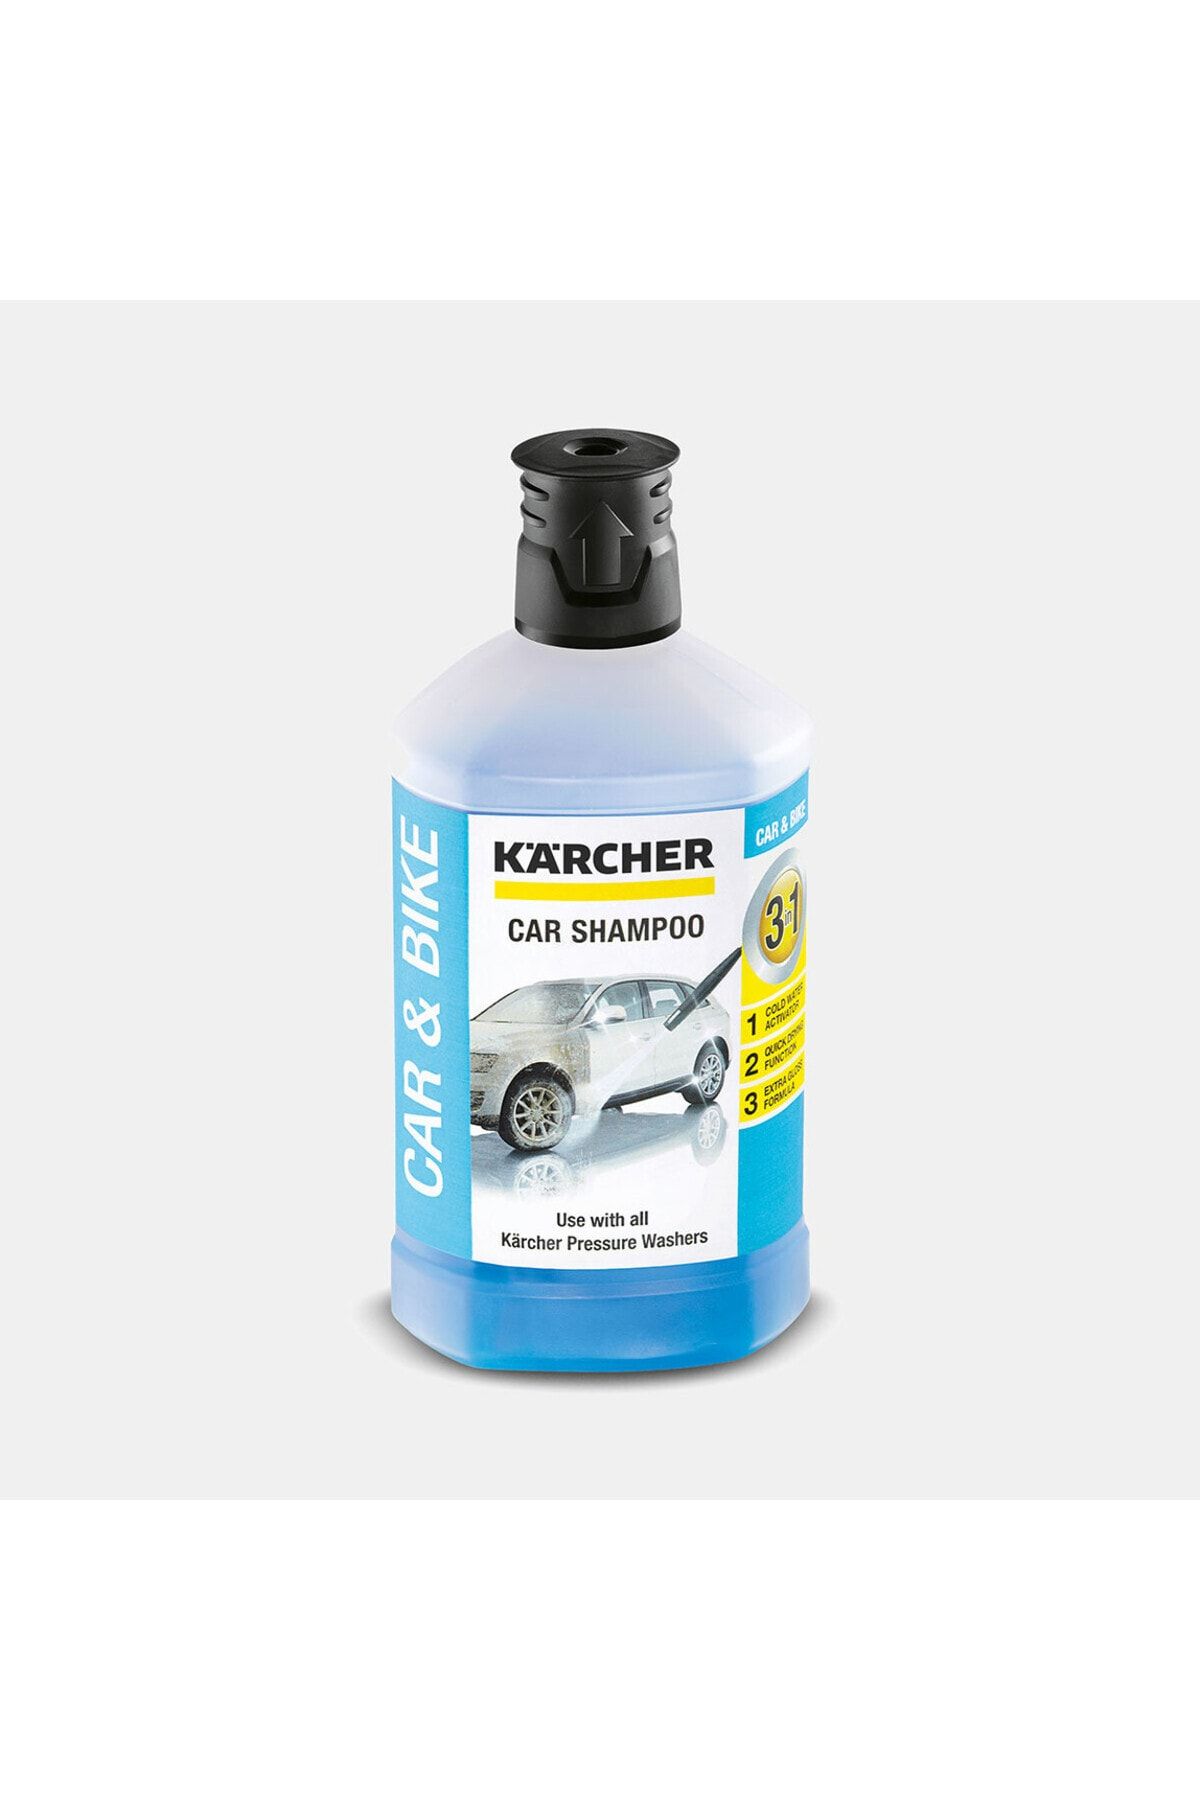 Karcher 3 in 1 Araç Şampuanı 1 litre